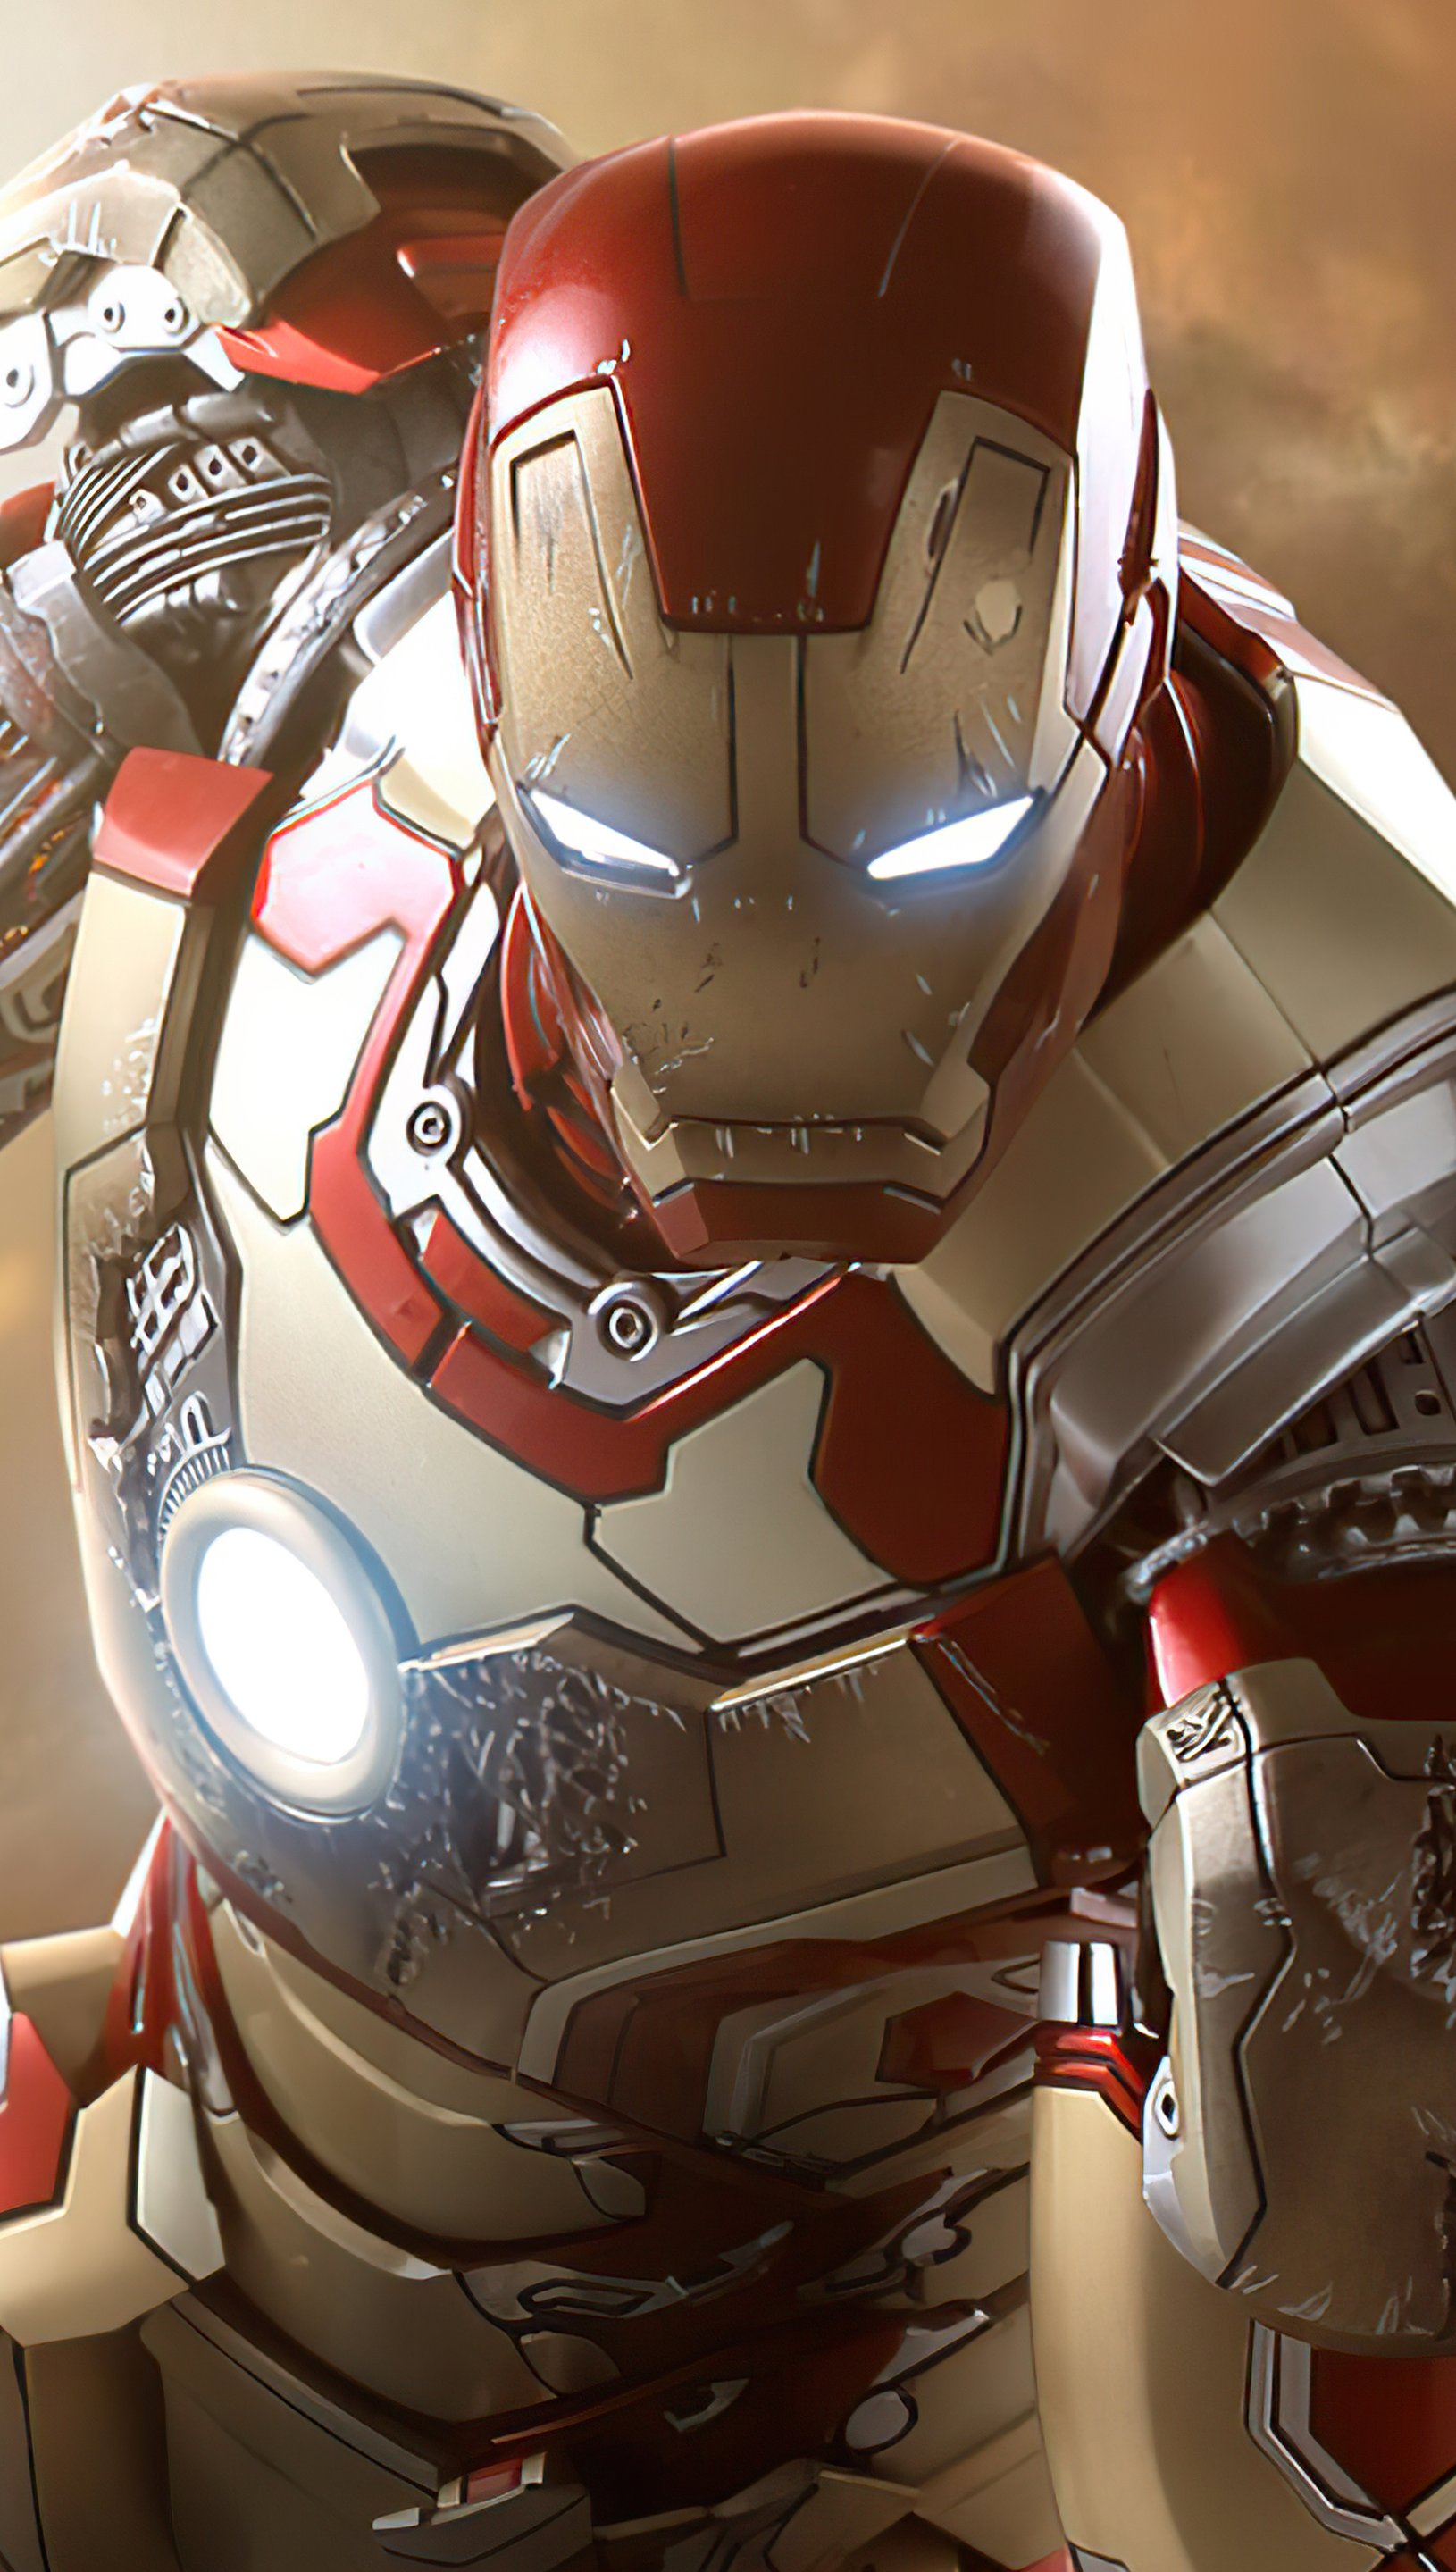 Iron Man new suit Wallpaper 5k Ultra HD ID:8325